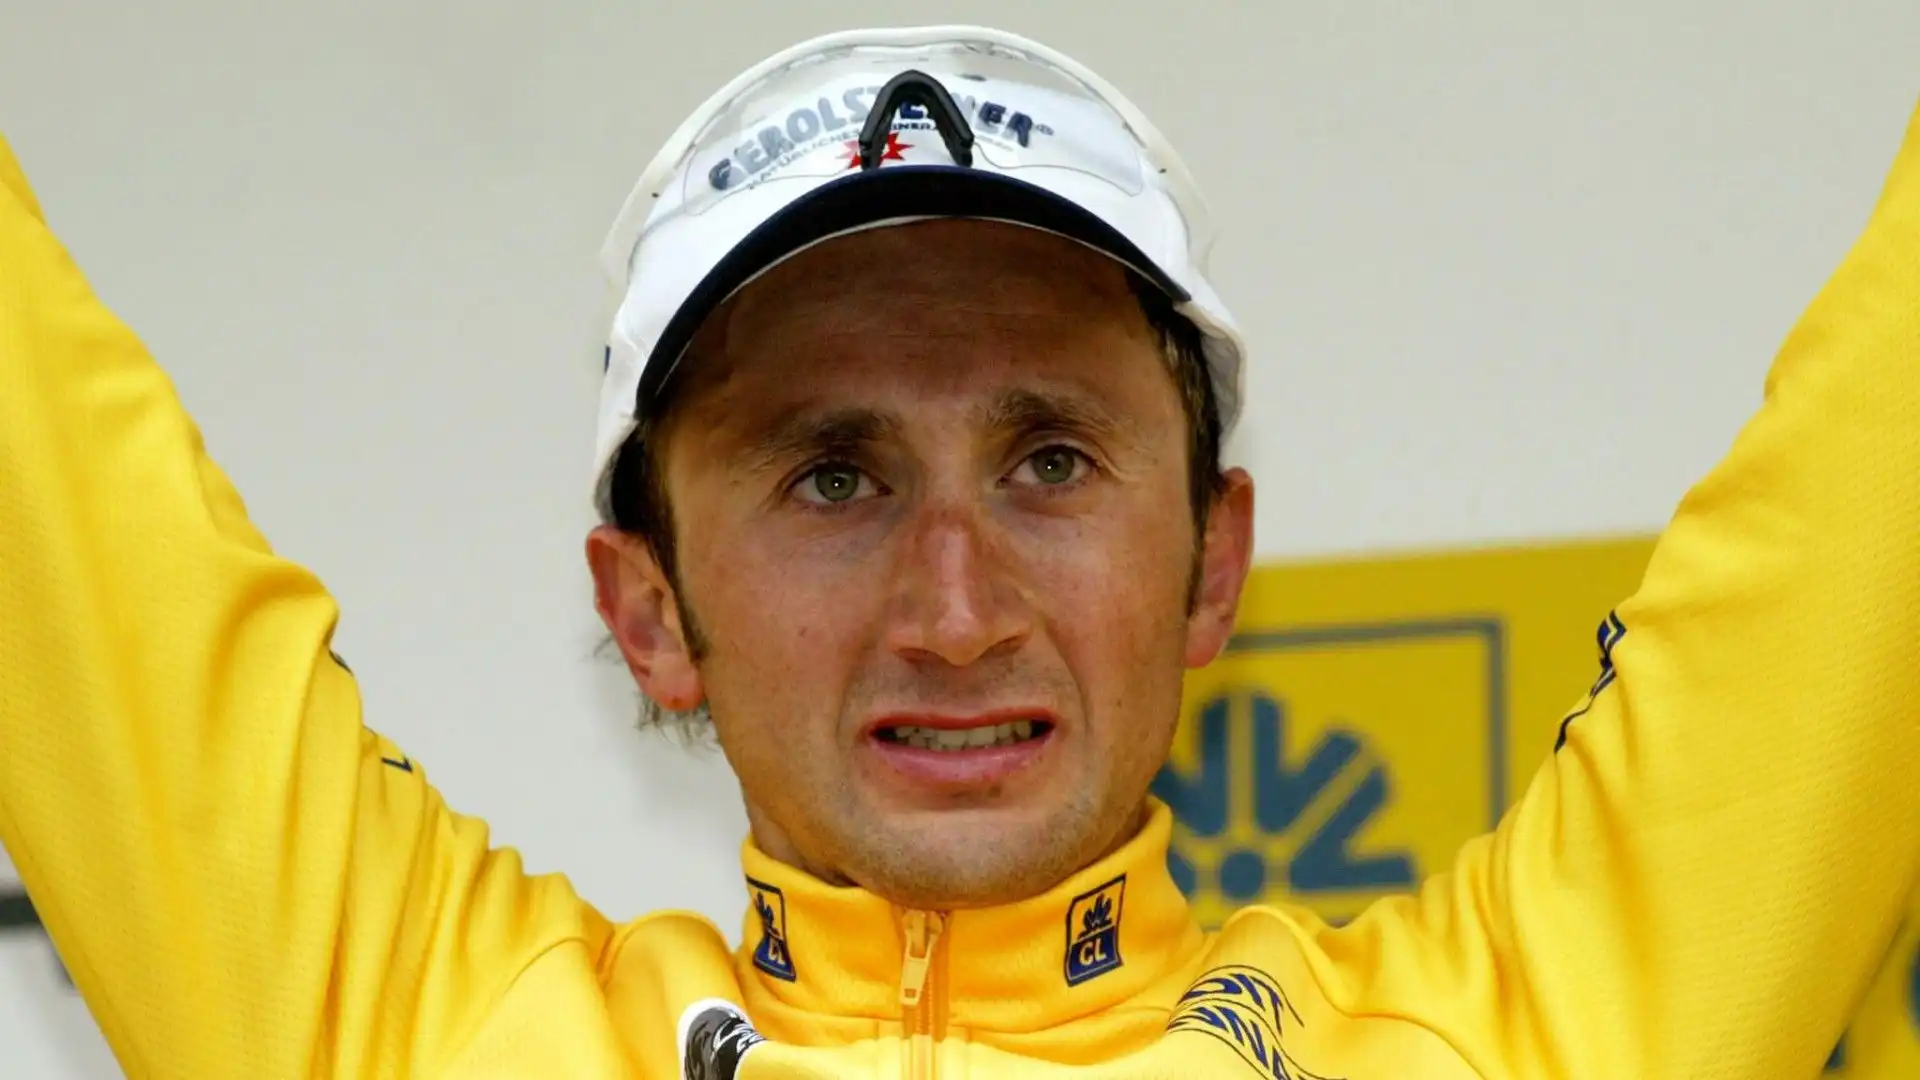 Ha trionfato nell'edizione 2004 della Liegi-Bastogne-Liegi